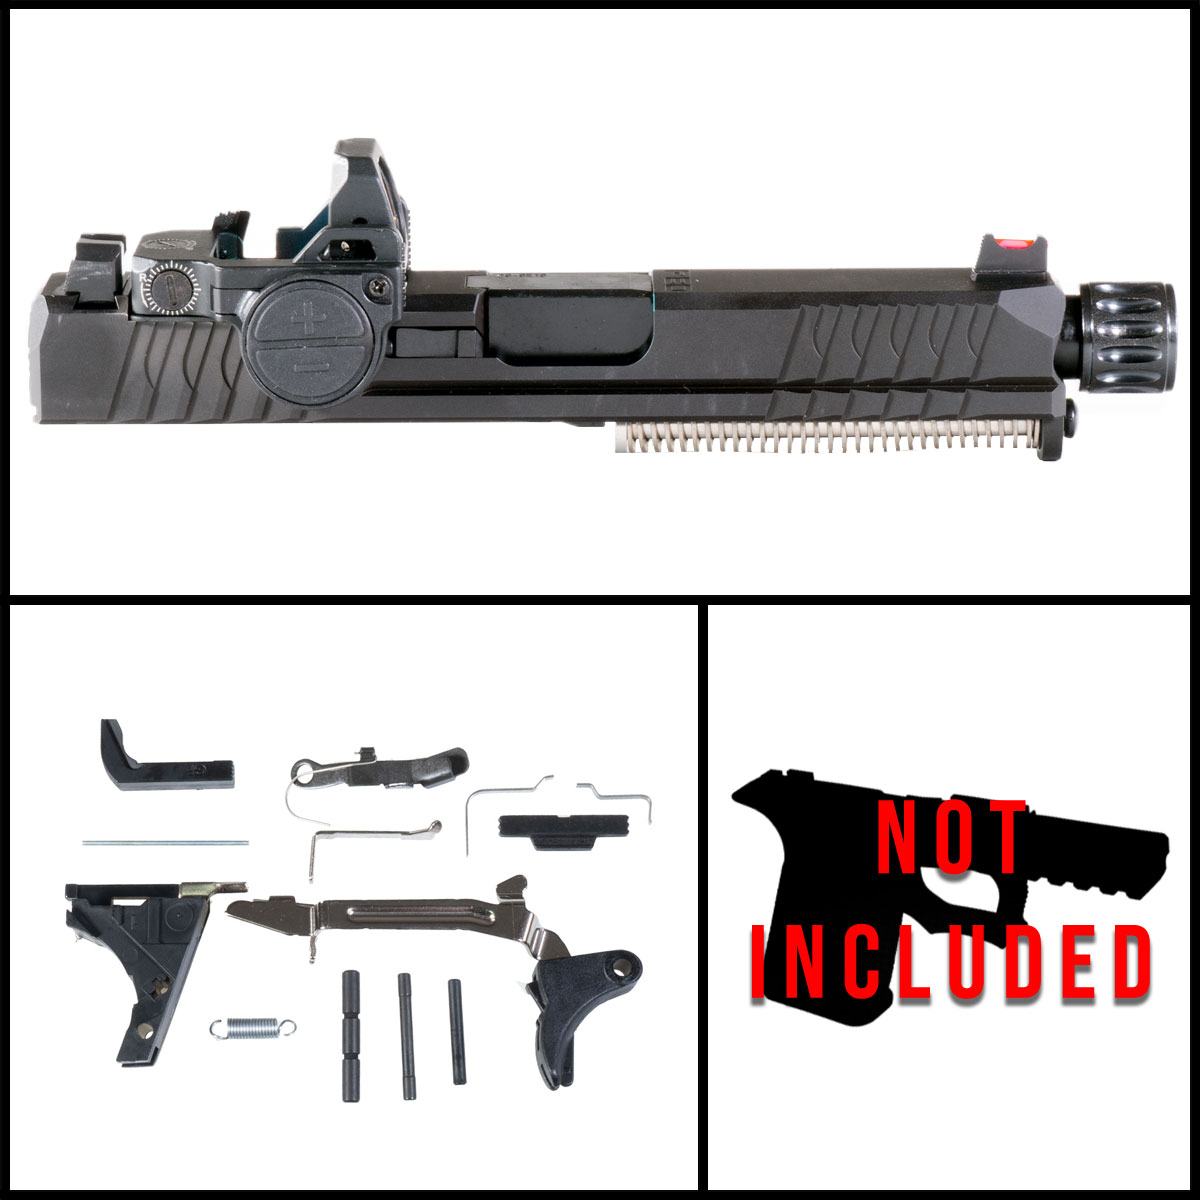 DTT 'Oiseau w/Red Dot' 9mm Full Pistol Build Kit (Everything Minus Frame) - Glock 19 Gen 1-3 Compatible